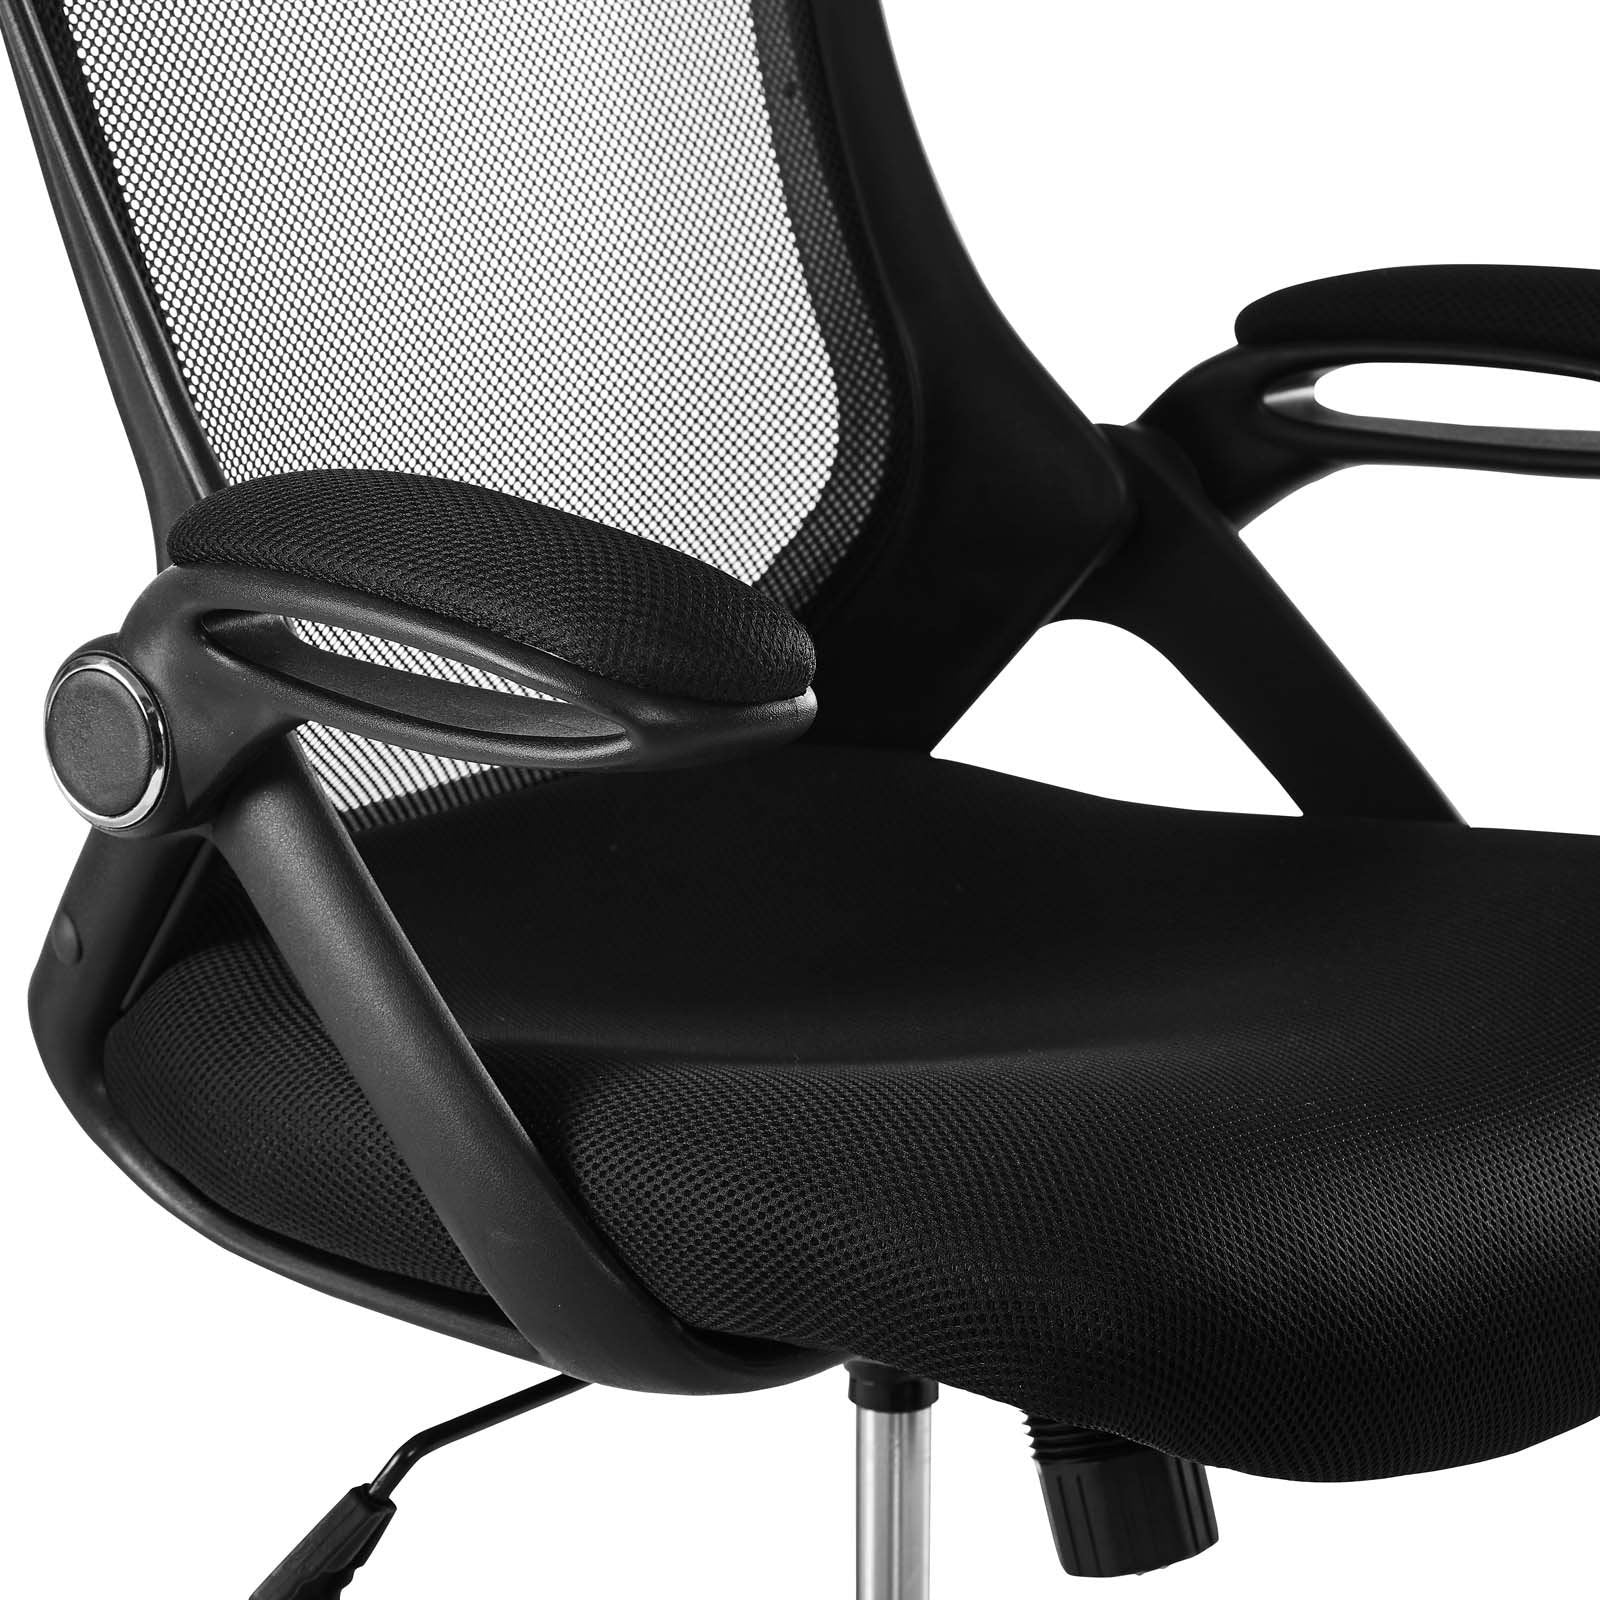 Modway Furniture Modern Assert Mesh Drafting Chair - EEI-3190